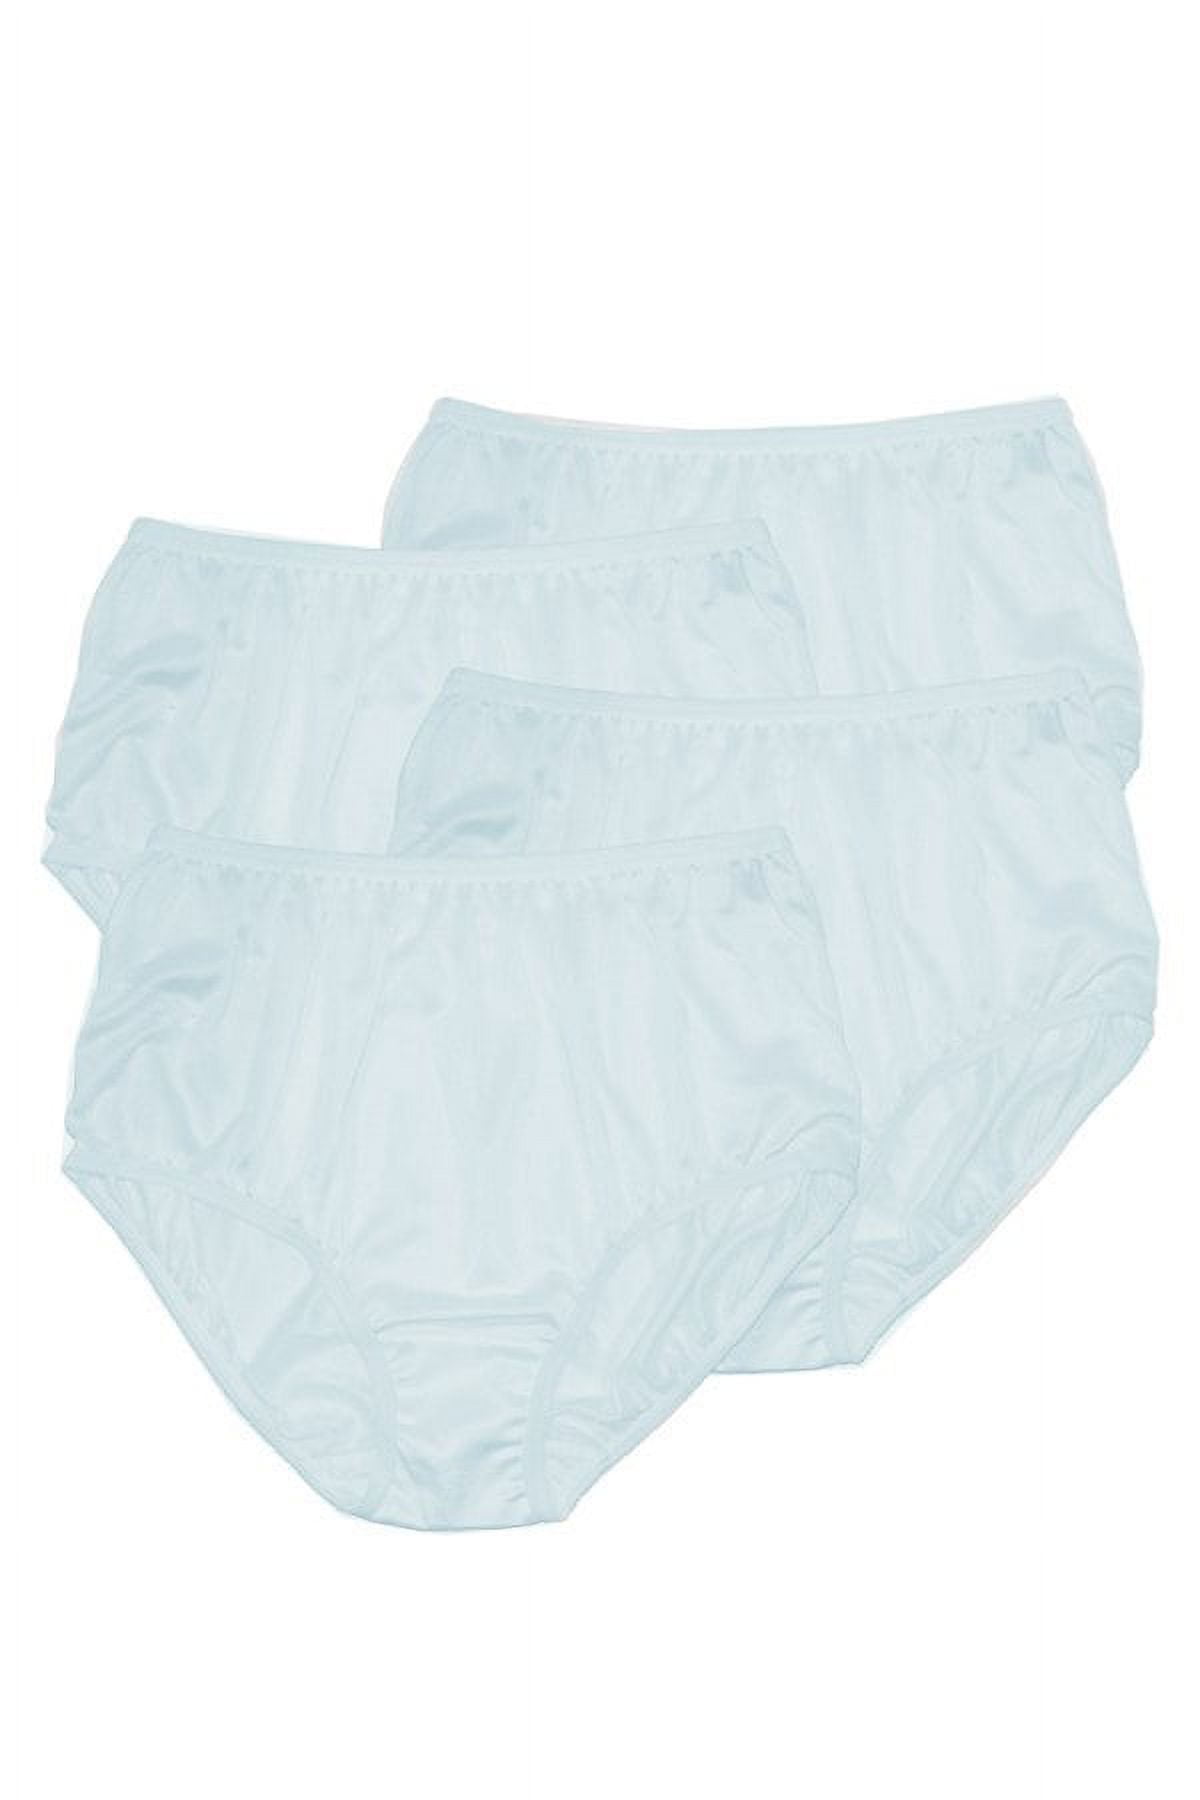 Teri Women's 331 Full Cut Nylon Brief Panty - 4 Pack